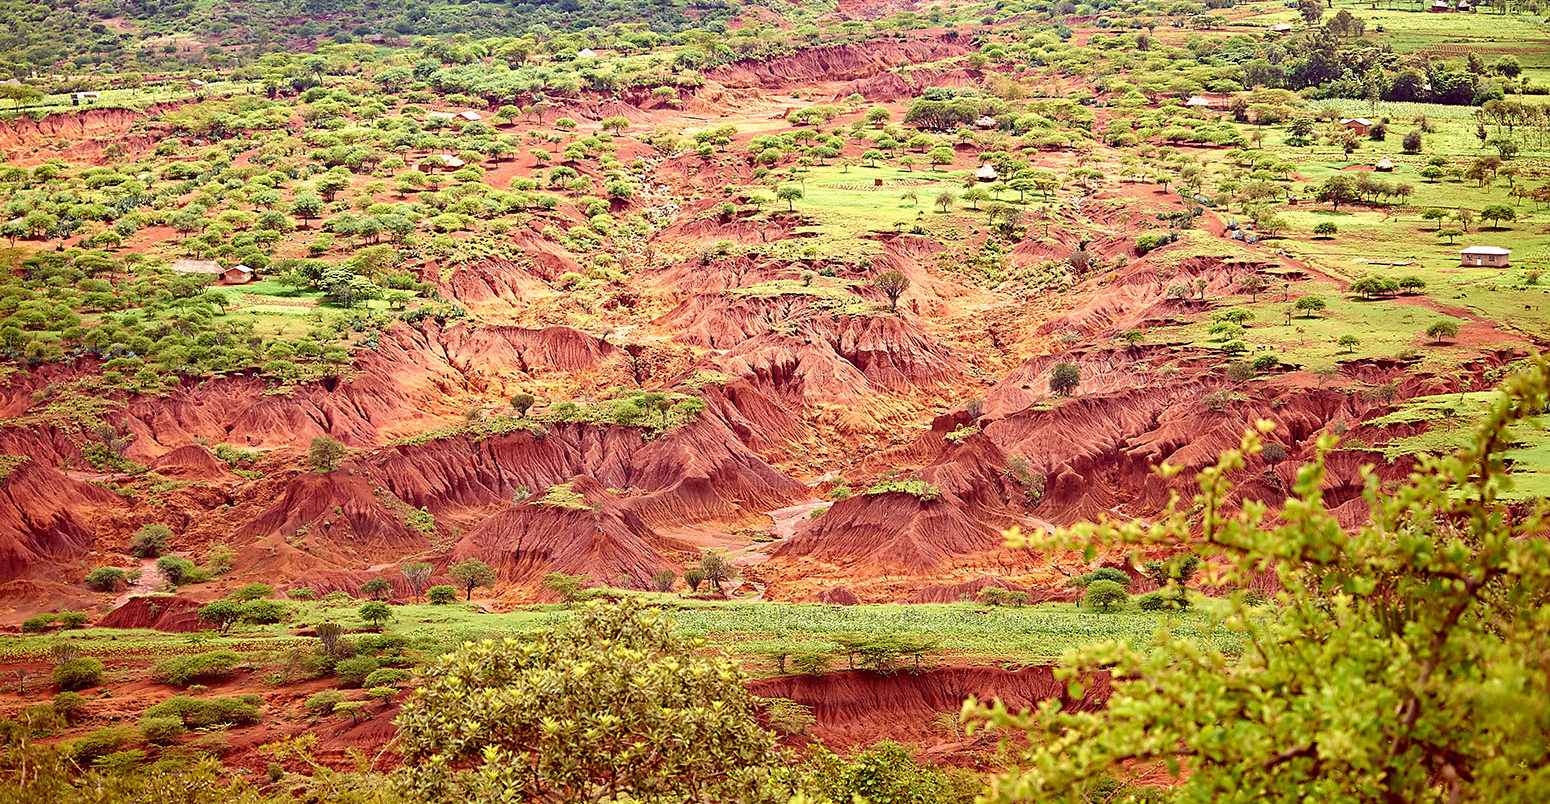 水土流失造成的森林砍伐和过度耕作,恩戈罗恩戈罗高原,坦桑尼亚。信贷:斯蒂芬施拉姆除股票的照片。HFA65N